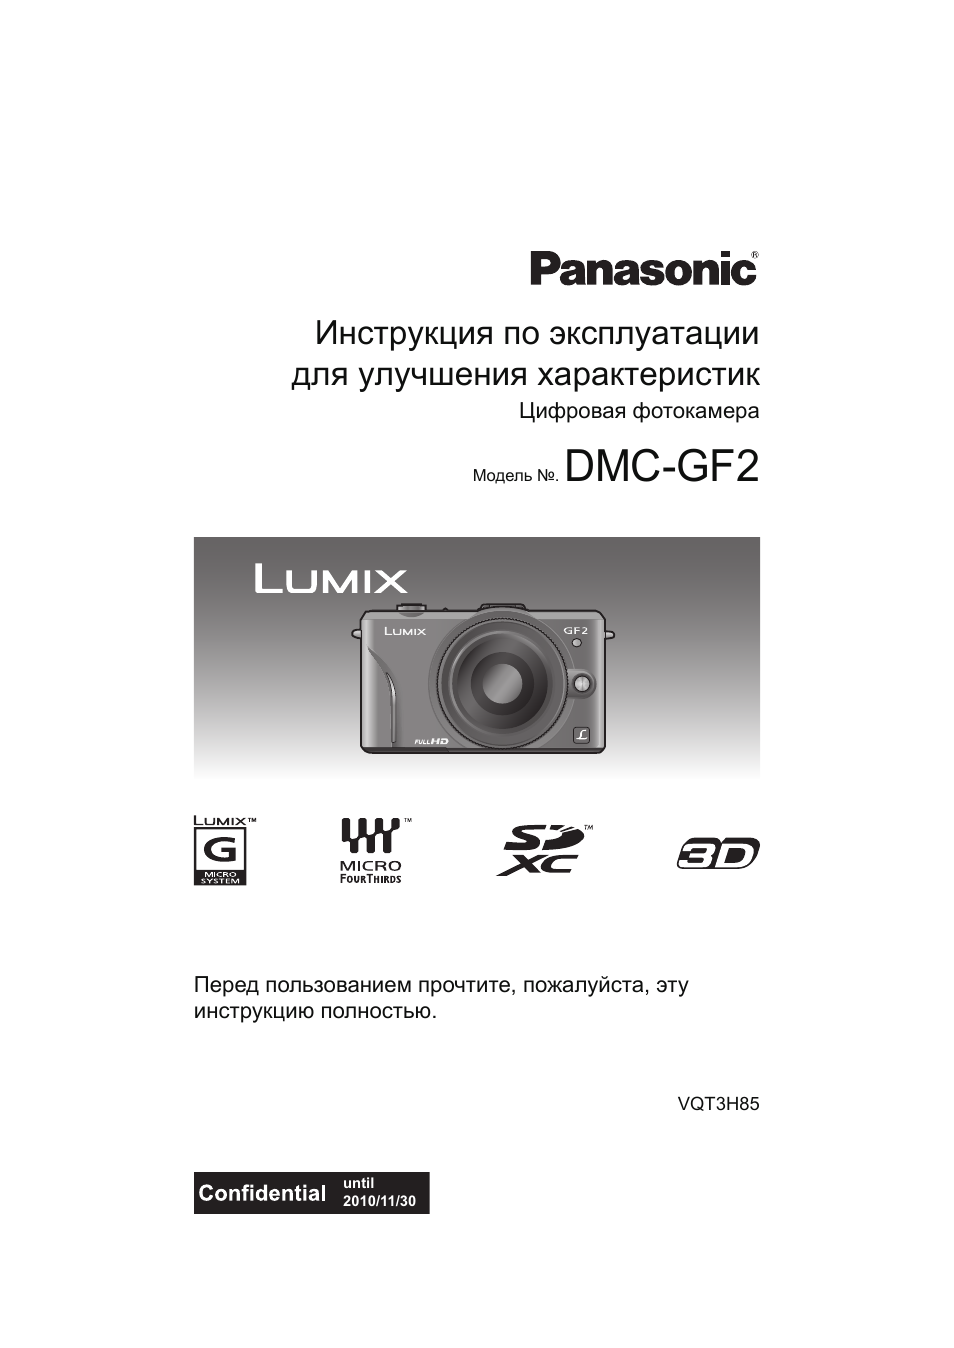 Инструкция panasonic dmc. Фотоаппарат Lumix инструкция. DMC 2 камера. Panasonic RR-xs400. Инструкция к фотоаппарату Люмикс 21 Икс.